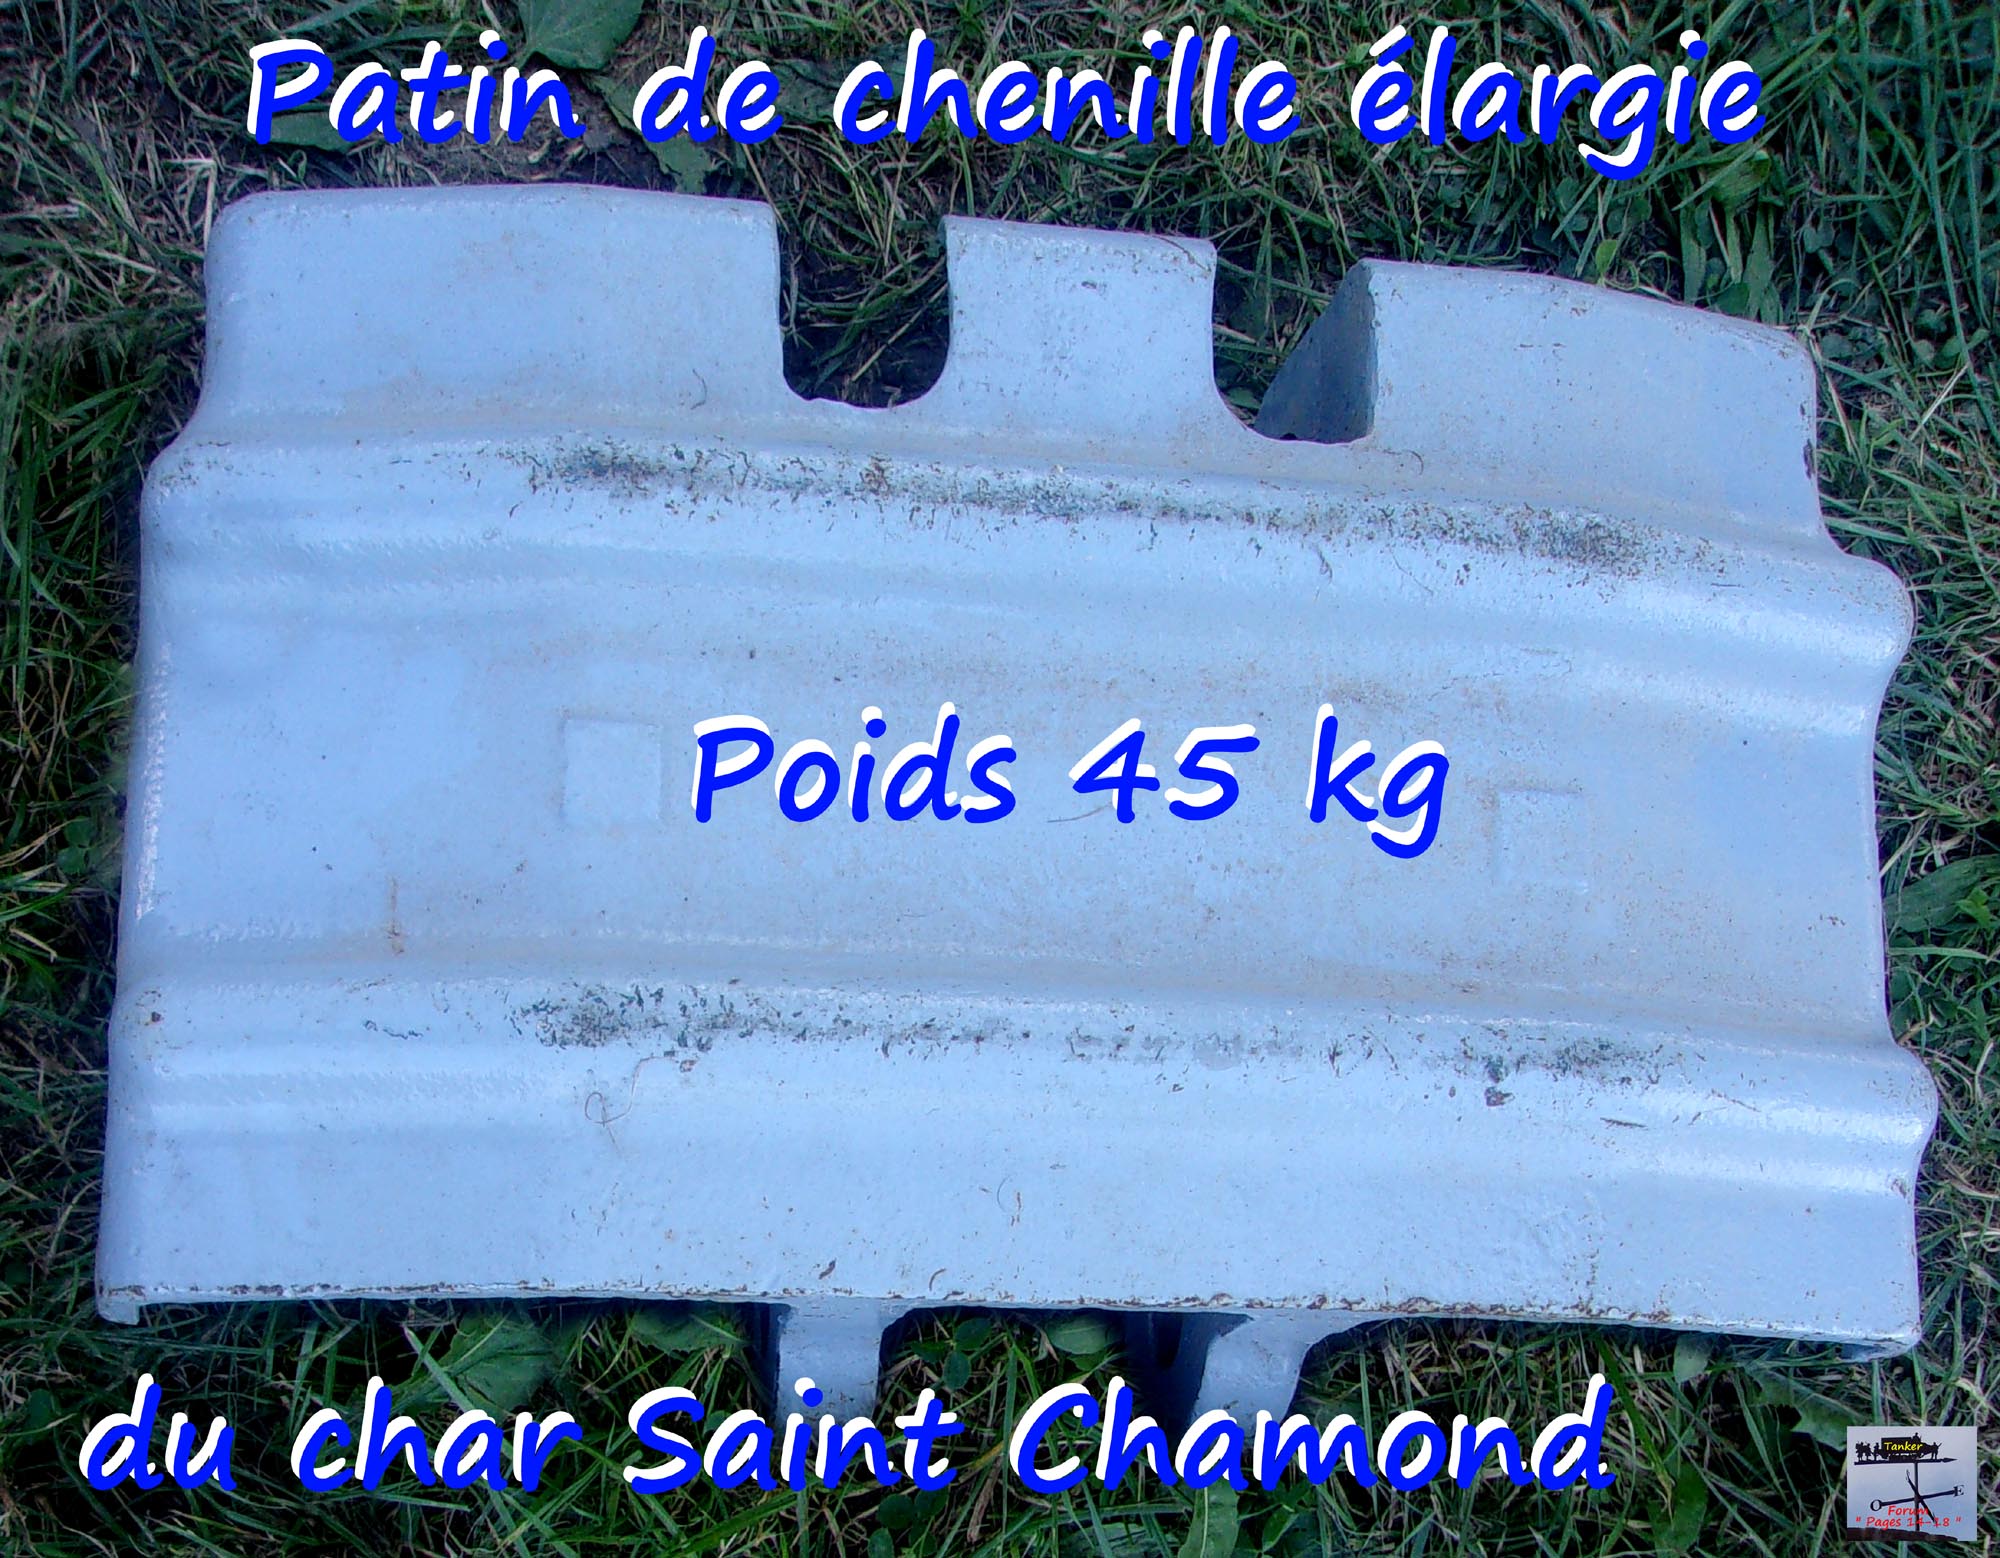 02 - Patin de chenille St Chamond asymétrique.jpg